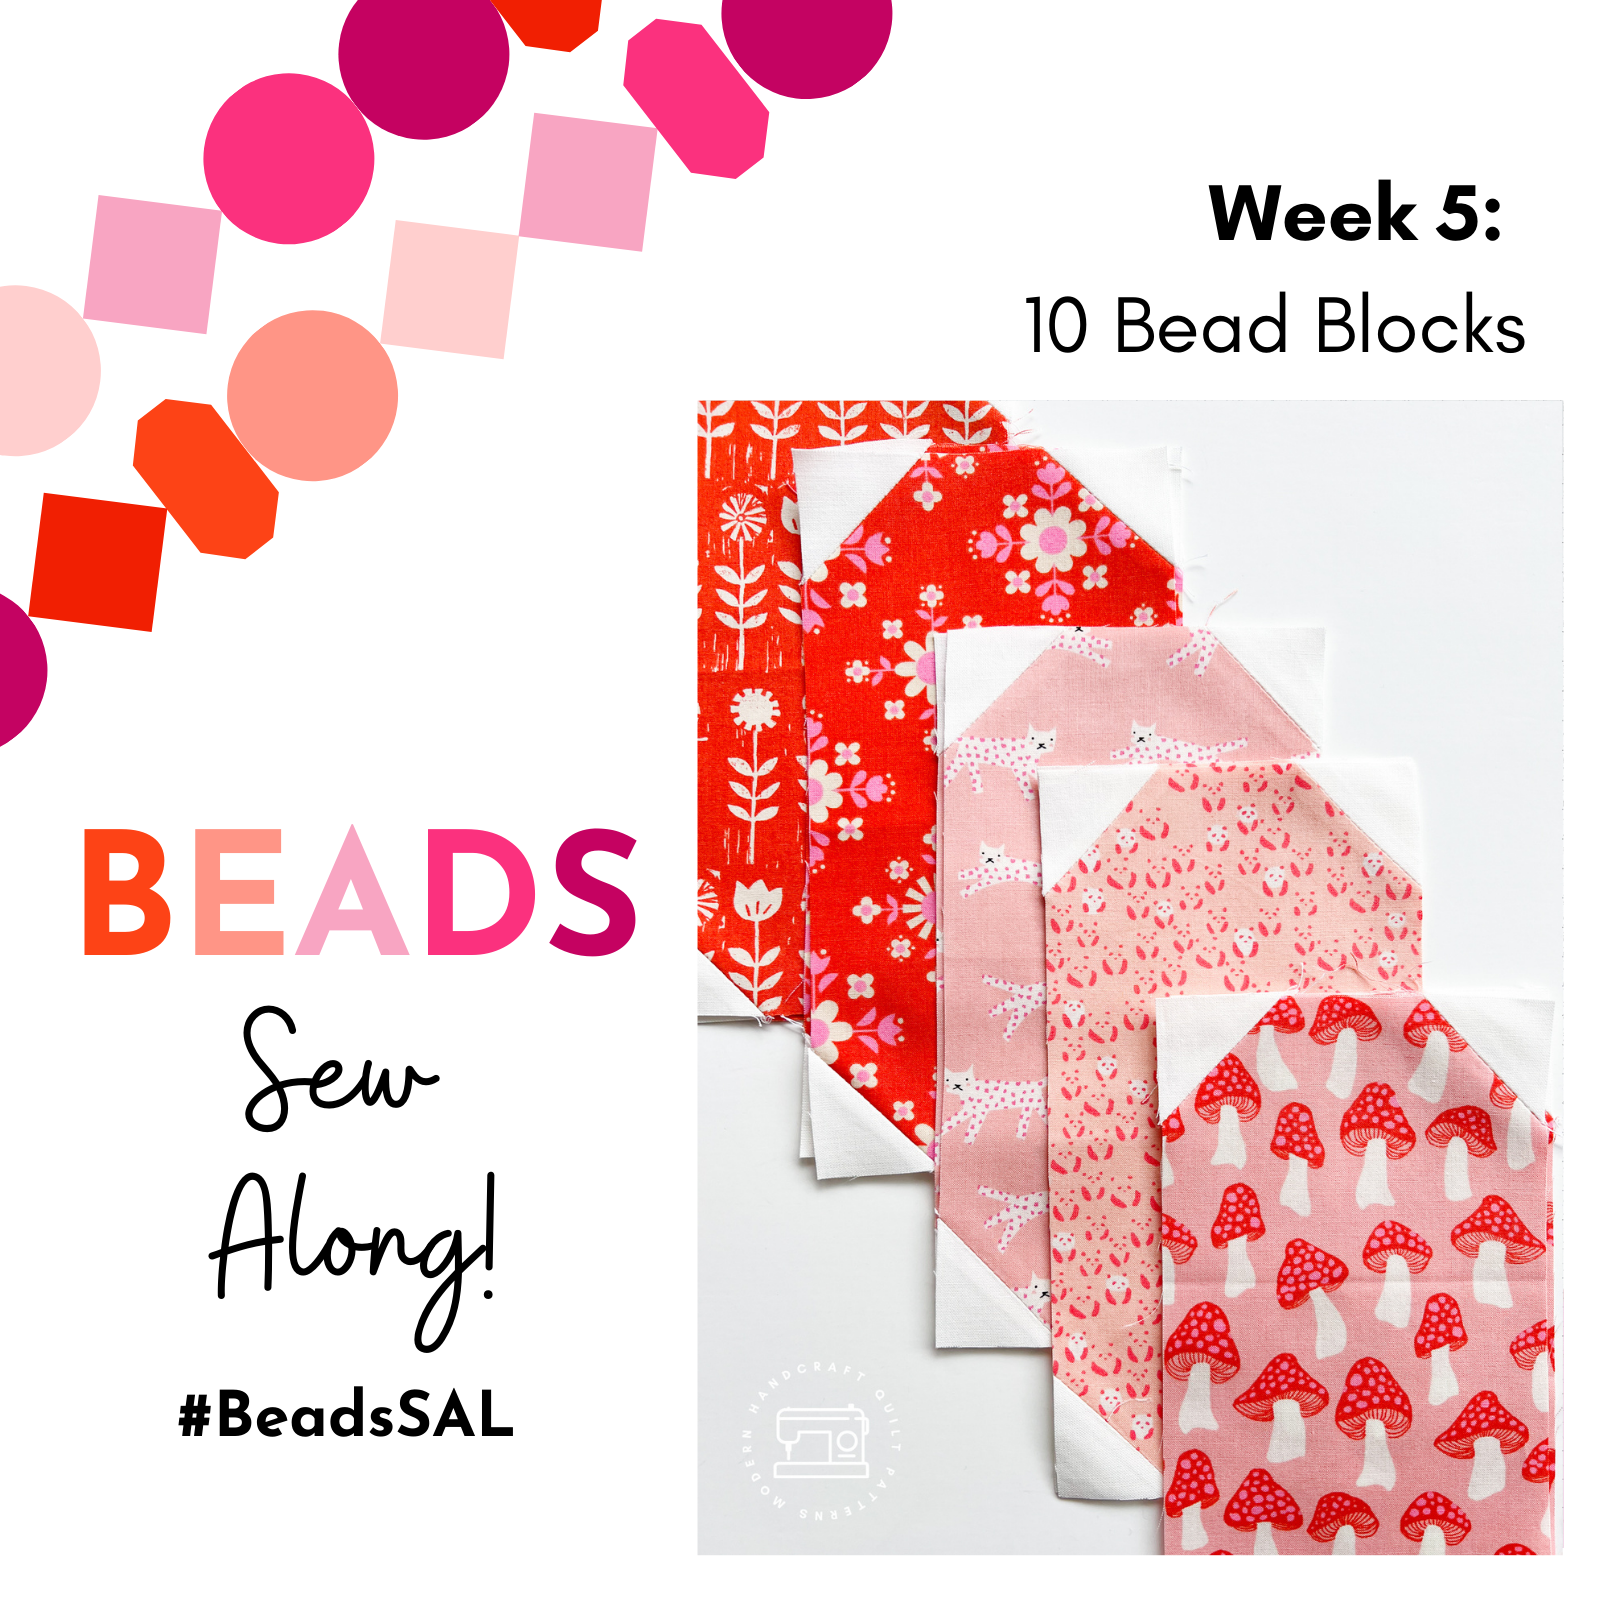 Beads Quilt Sew Along Week 5 - Modernhandcraft.com